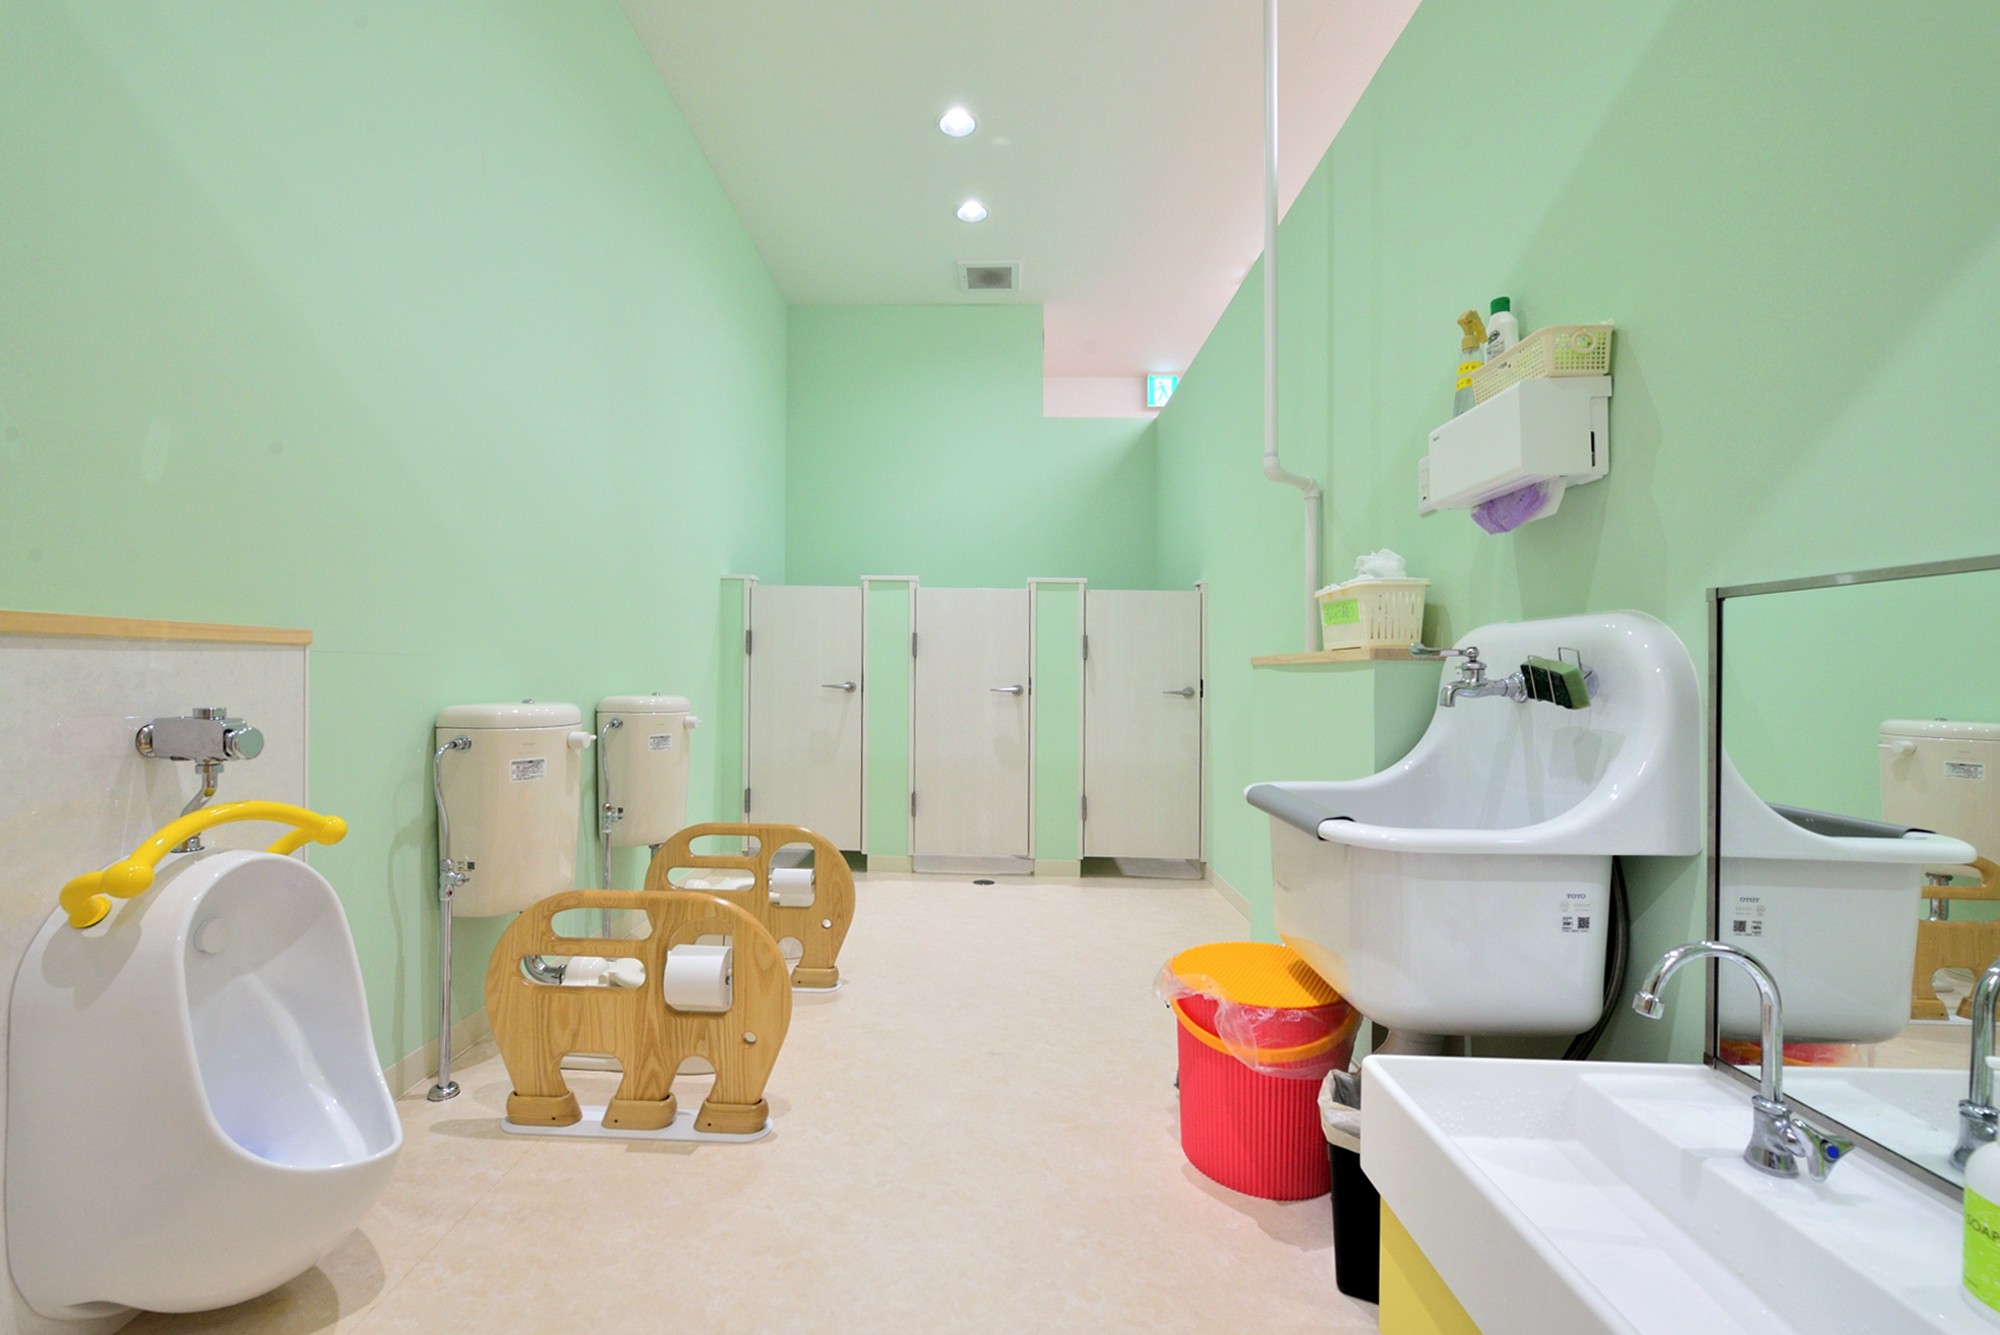 明るいグリーンの壁が特徴のトイレ 横須賀市 にじのそら保育園 バス トイレ事例 Suvaco スバコ